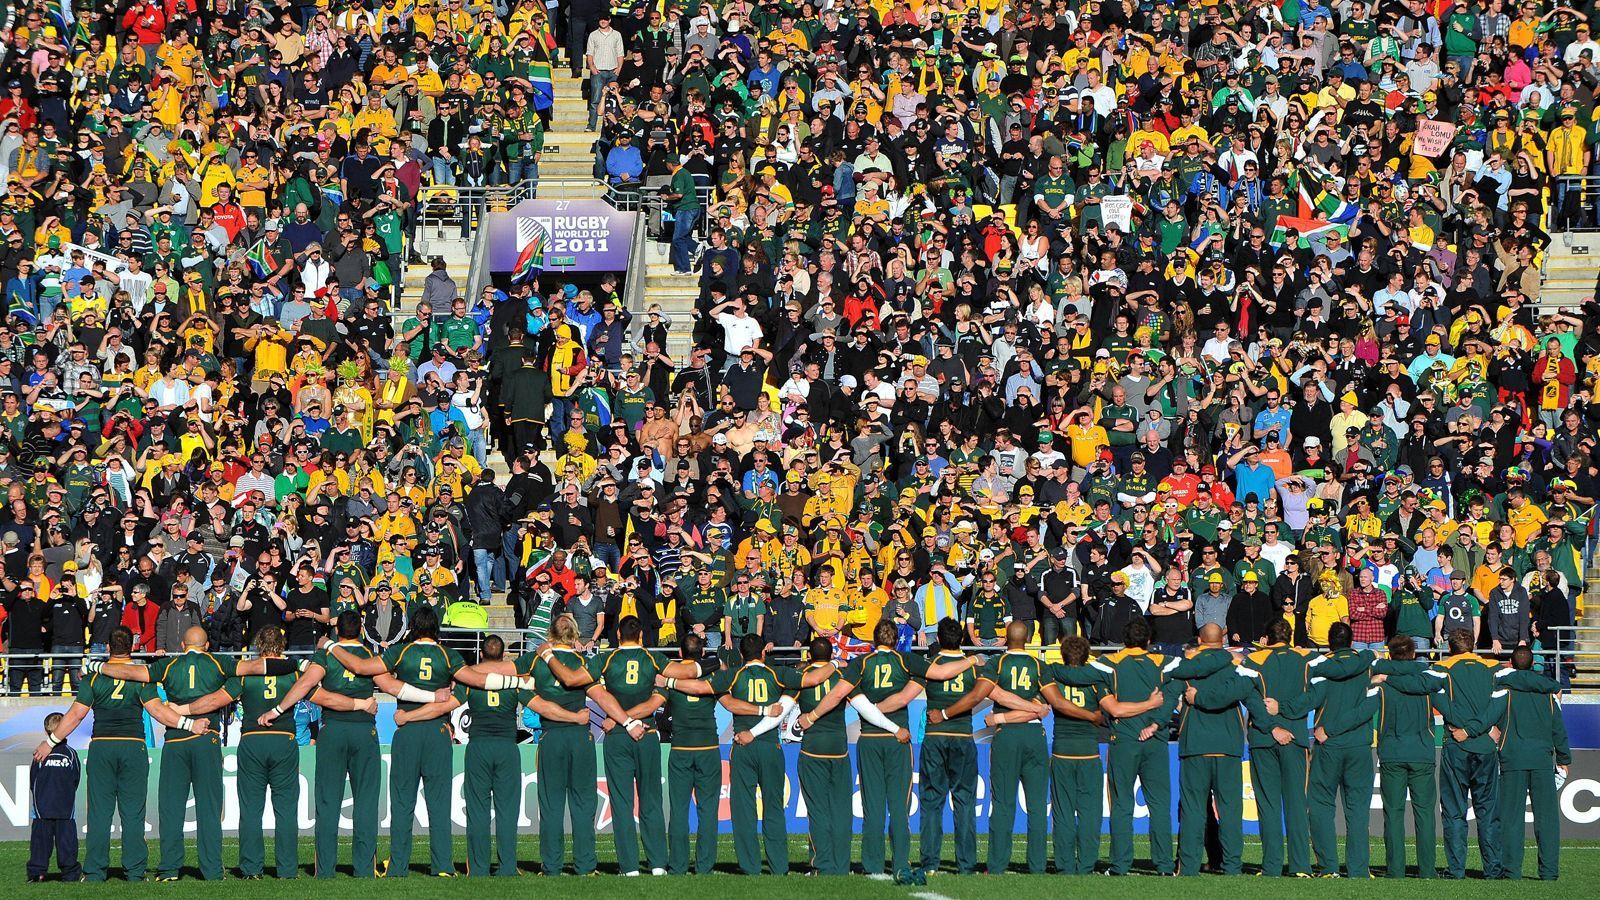 
                <strong>Südafrika – Rugby als Symbol der Befreiung </strong><br>
                Rugby ist in Südafrika fast ein Heiligtum. Dies liegt nicht zuletzt daran, dass der WM-Triumph von 1995 im eigenen Land als Symbol dafür gilt, dass die Apartheid (Rassentrennung) unter der Führung des damaligen Präsidenten Nelson Mandela ein Ende fand. Die "Springboks" zählen auch heute noch zu den absoluten Top-Mannschaften der Welt. 2007 gewannen sie ihren zweiten WM-Titel. Der letzte Erfolg war der Gewinn des Rugby Championship 2019 im Juli / August, als die Südafrikaner gegen Australien und Argentinien gewannen und gegen Neuseeland Unentschieden spielten.  
              